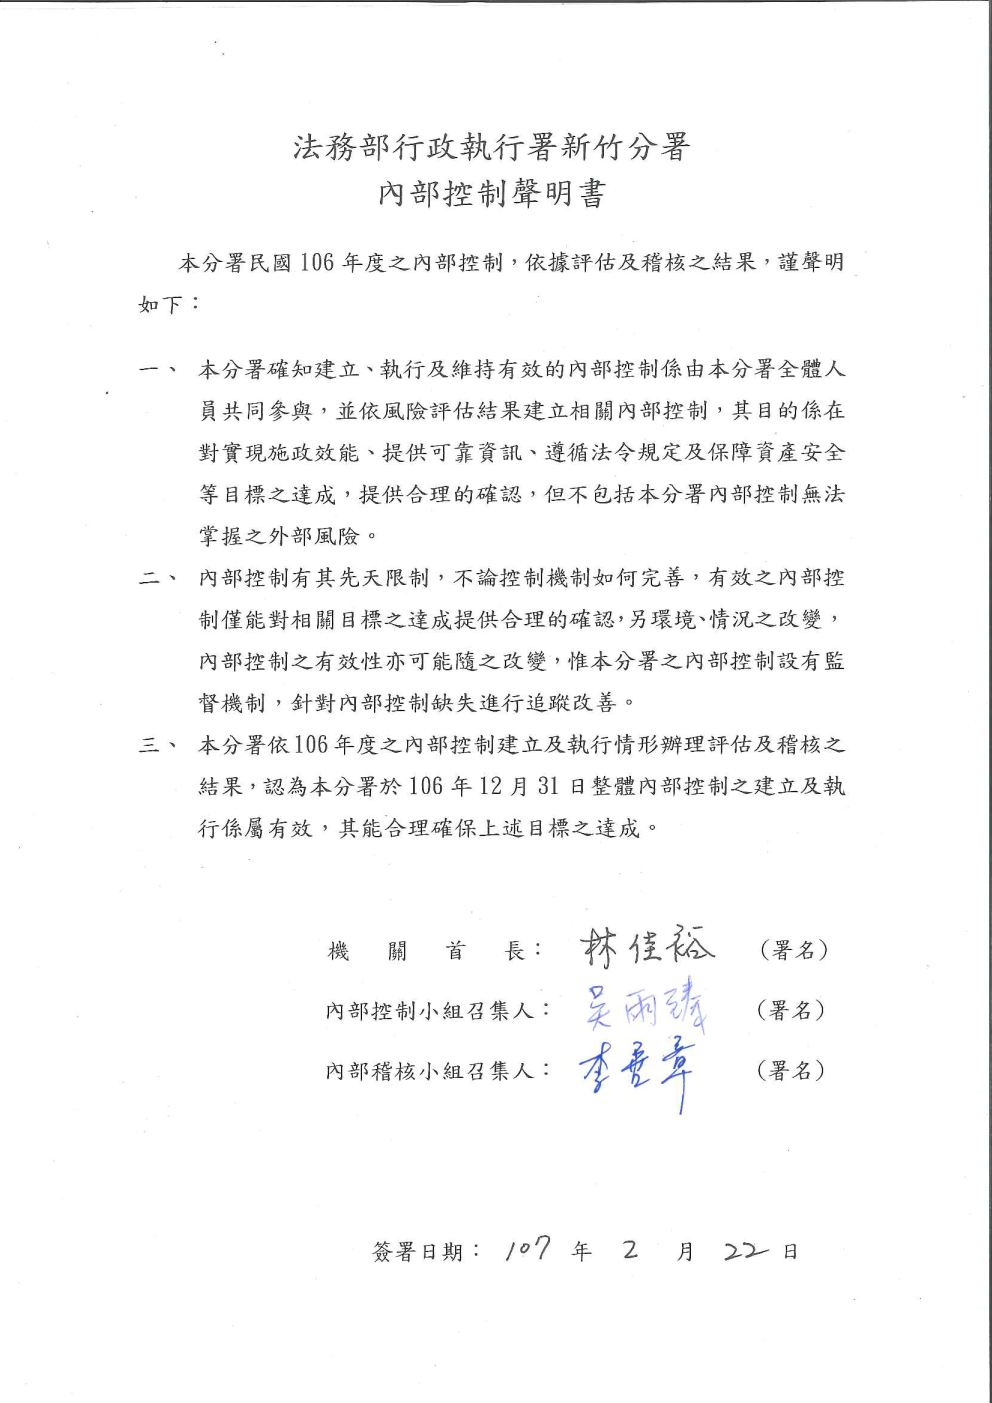 新竹分署106年度內部控制聲明書(公文簽核掃描圖)